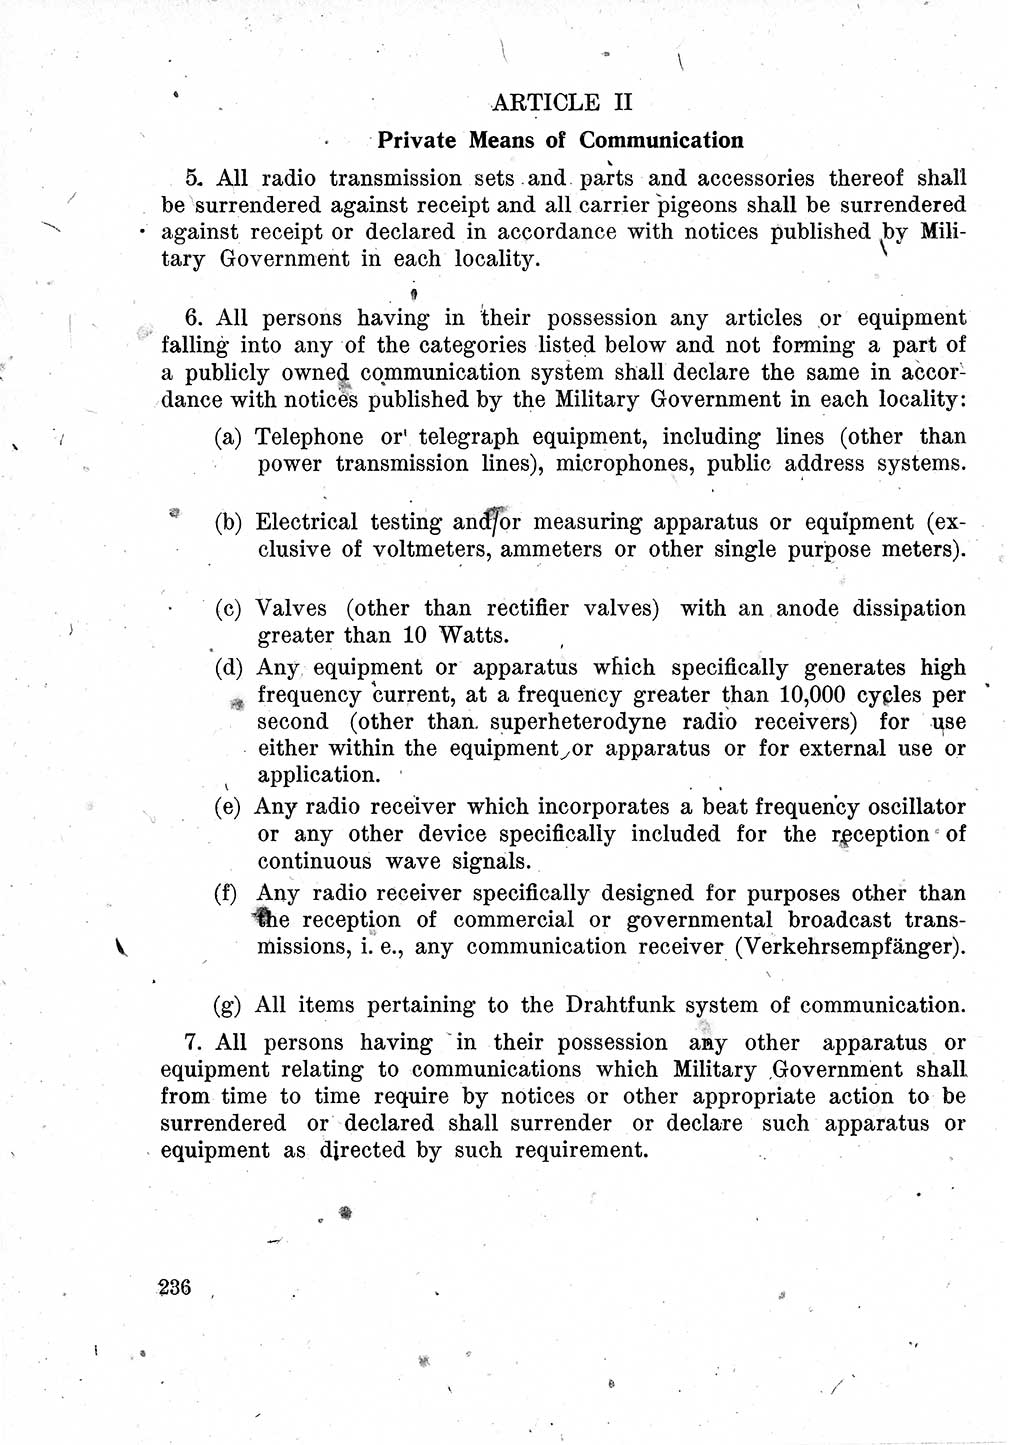 Das Recht der Besatzungsmacht (Deutschland), Proklamationen, Deklerationen, Verordnungen, Gesetze und Bekanntmachungen 1947, Seite 236 (R. Bes. Dtl. 1947, S. 236)